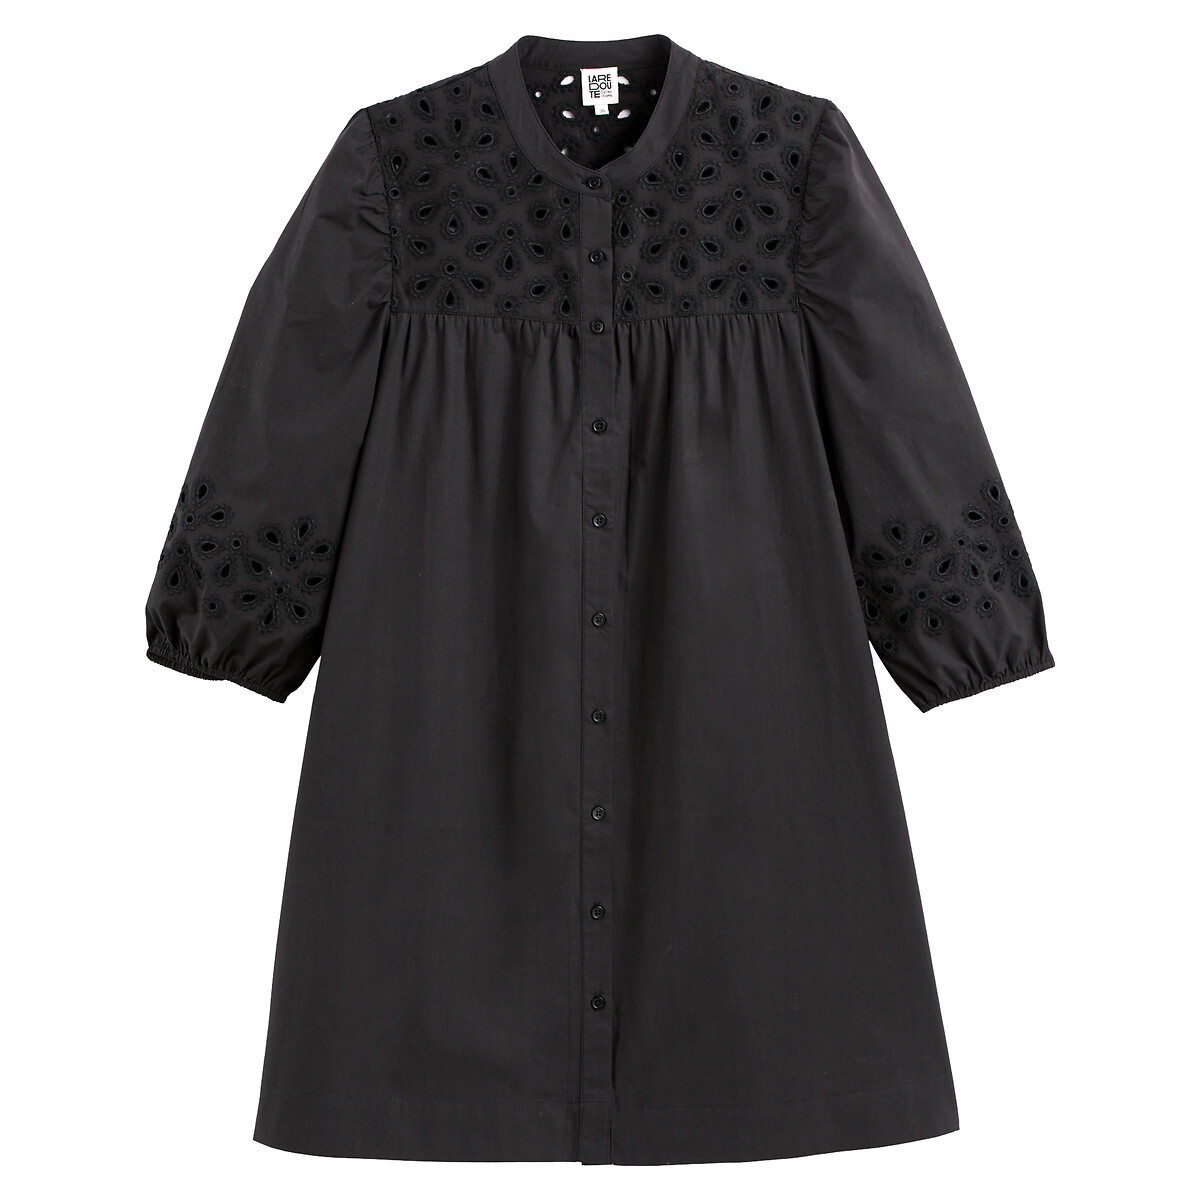 Платье короткое на пуговицах с английской вышивкой  56 черный LaRedoute, размер 56 - фото 5